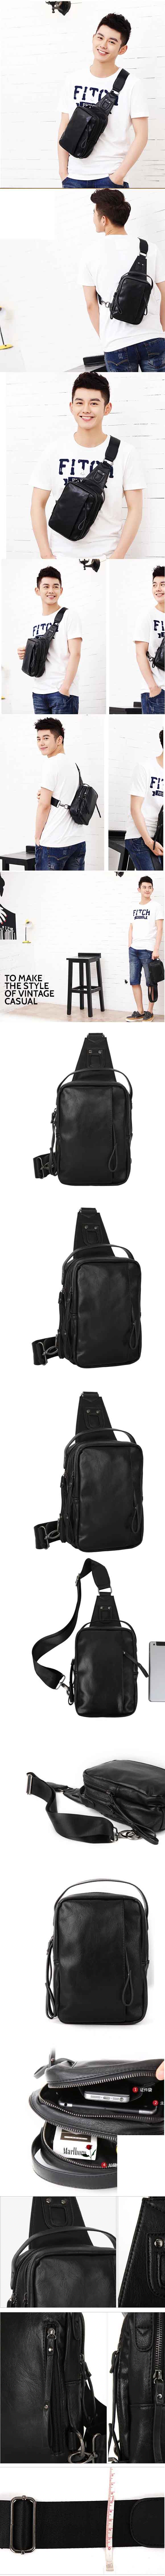 cari tas selempang pria model terbaru serbaguna cocok untuk menyimpan gadget dan dompet anda saat bepergian, klik dan pesan online sekarang